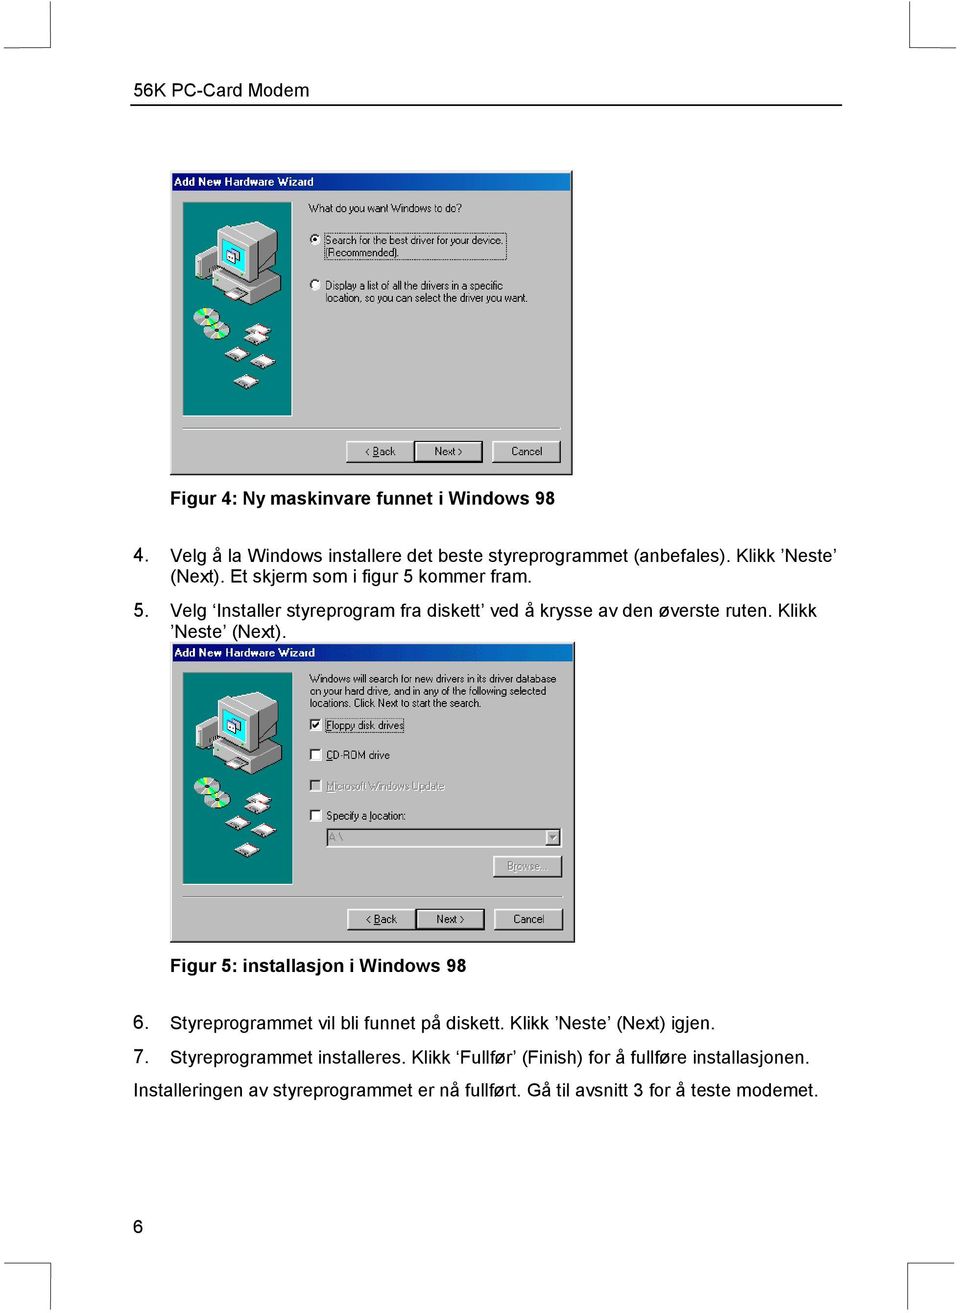 Figur 5: installasjon i Windows 98 6. Styreprogrammet vil bli funnet på diskett. Klikk Neste (Next) igjen. 7. Styreprogrammet installeres.